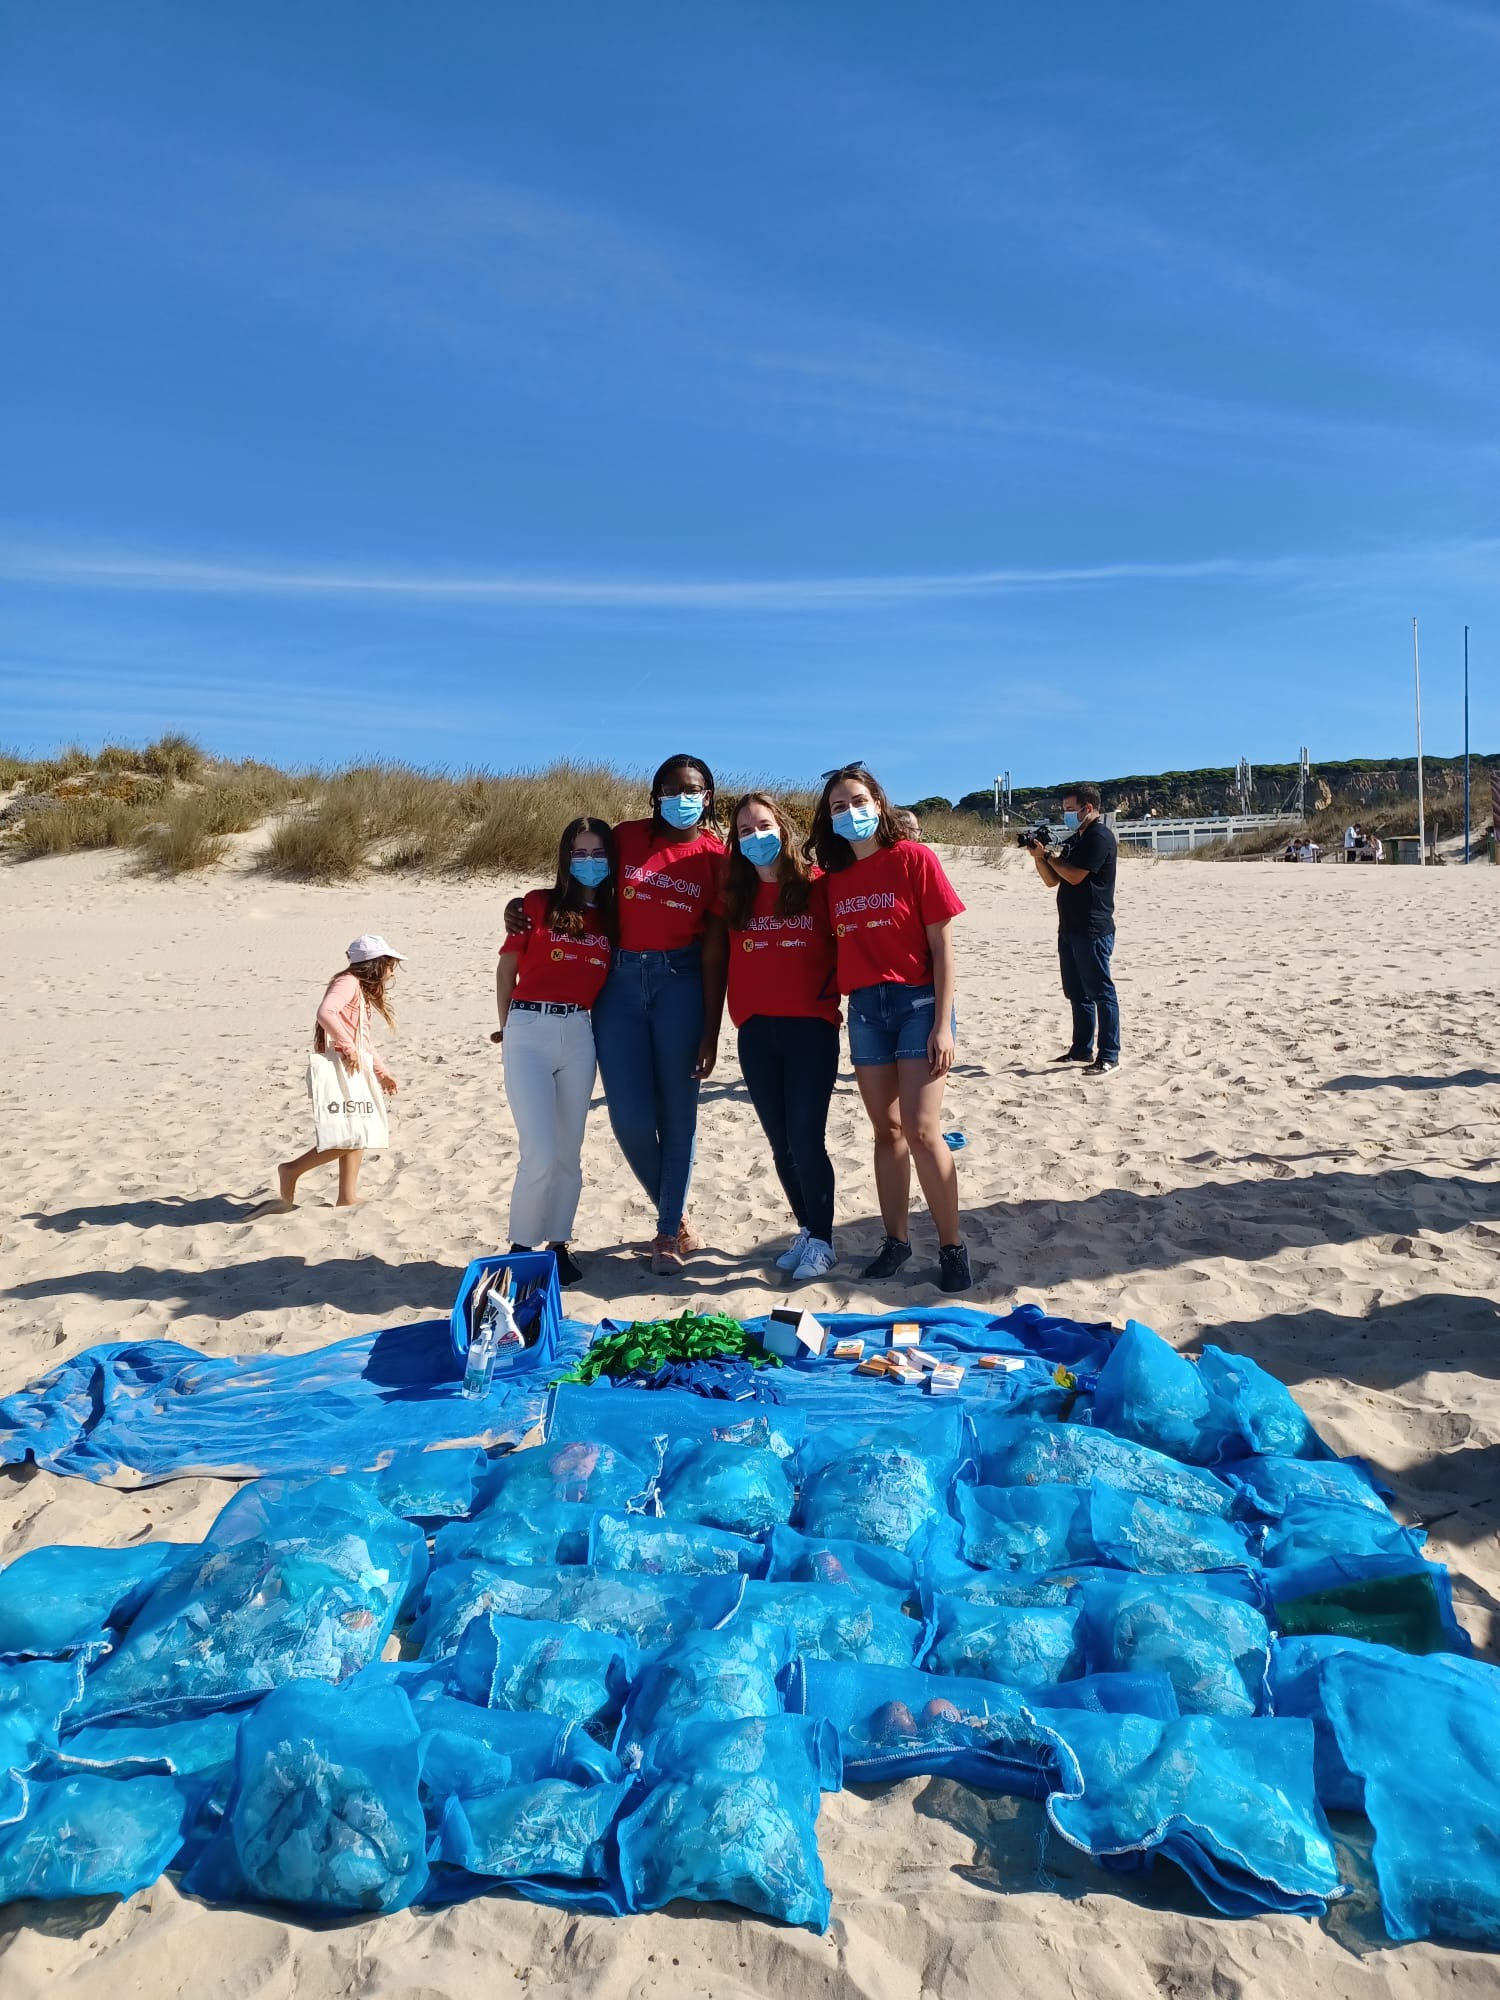 4 jovens numa praia com muitos sacos de lixo recolhido do areal à sua frente